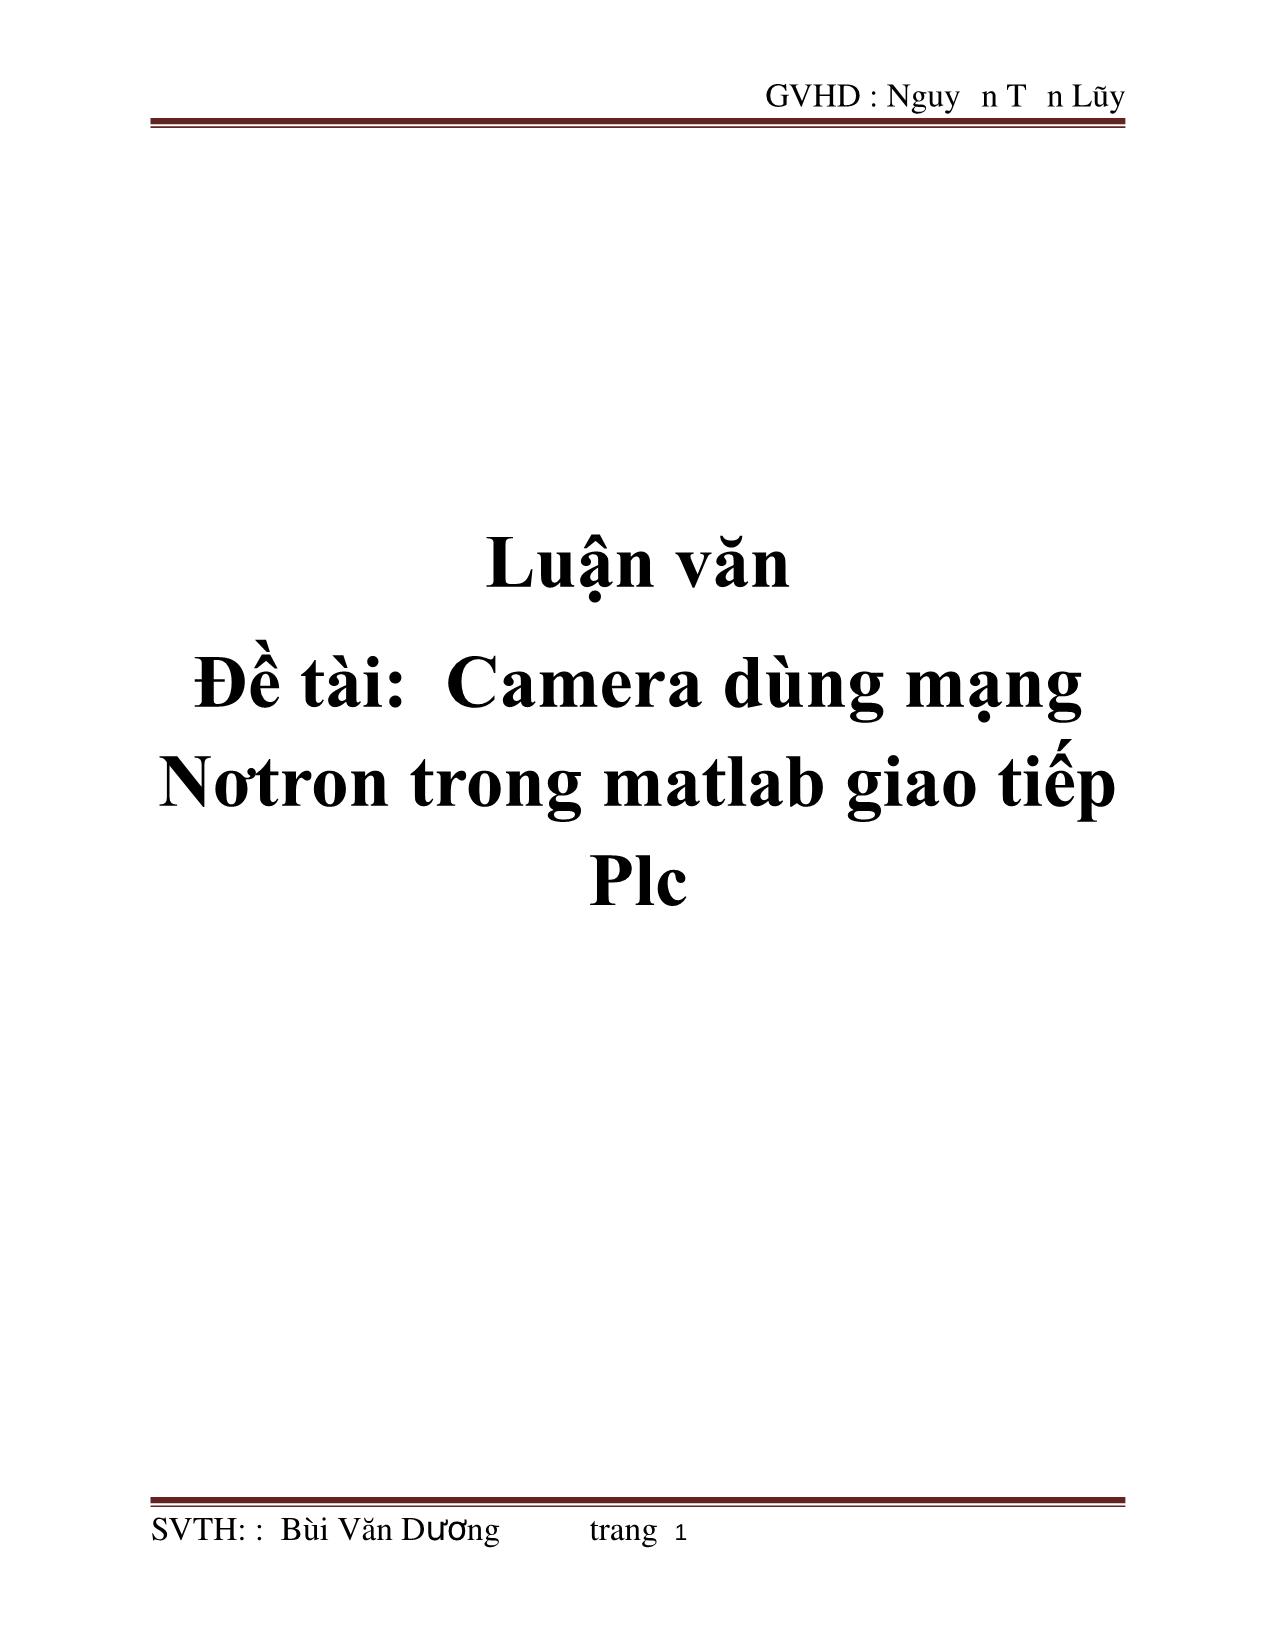 Luận văn Camera dùng mạng Nơtron trong matlab giao tiếp Plc trang 1